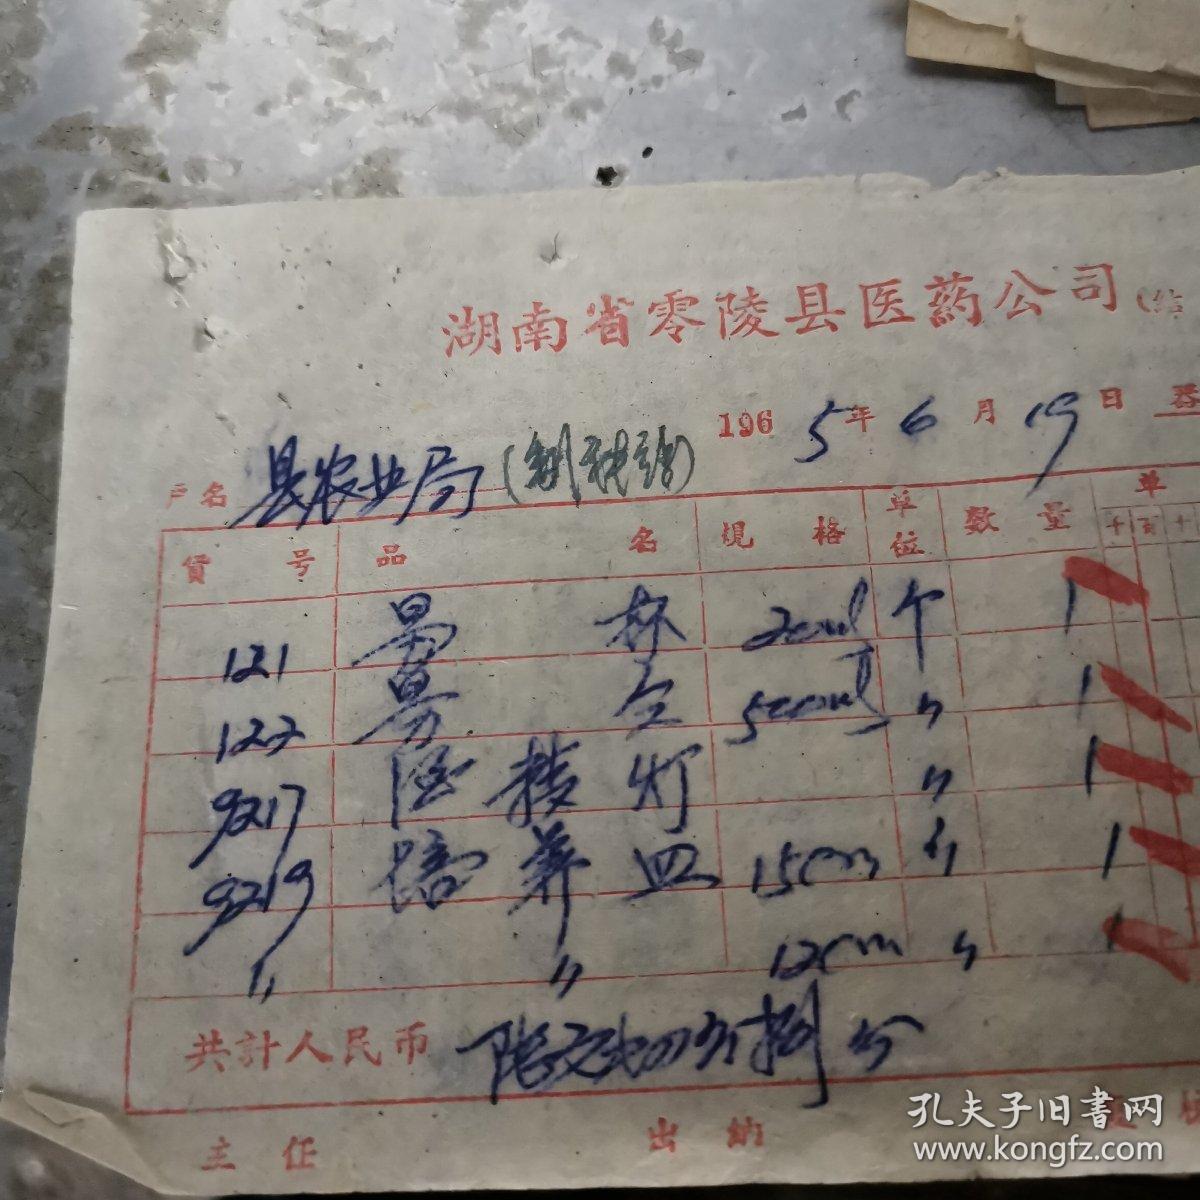 零陵文献    1965年零陵县医药公司发票010026   量杯   培养皿     同一来源之1965年票据拆出有装订孔